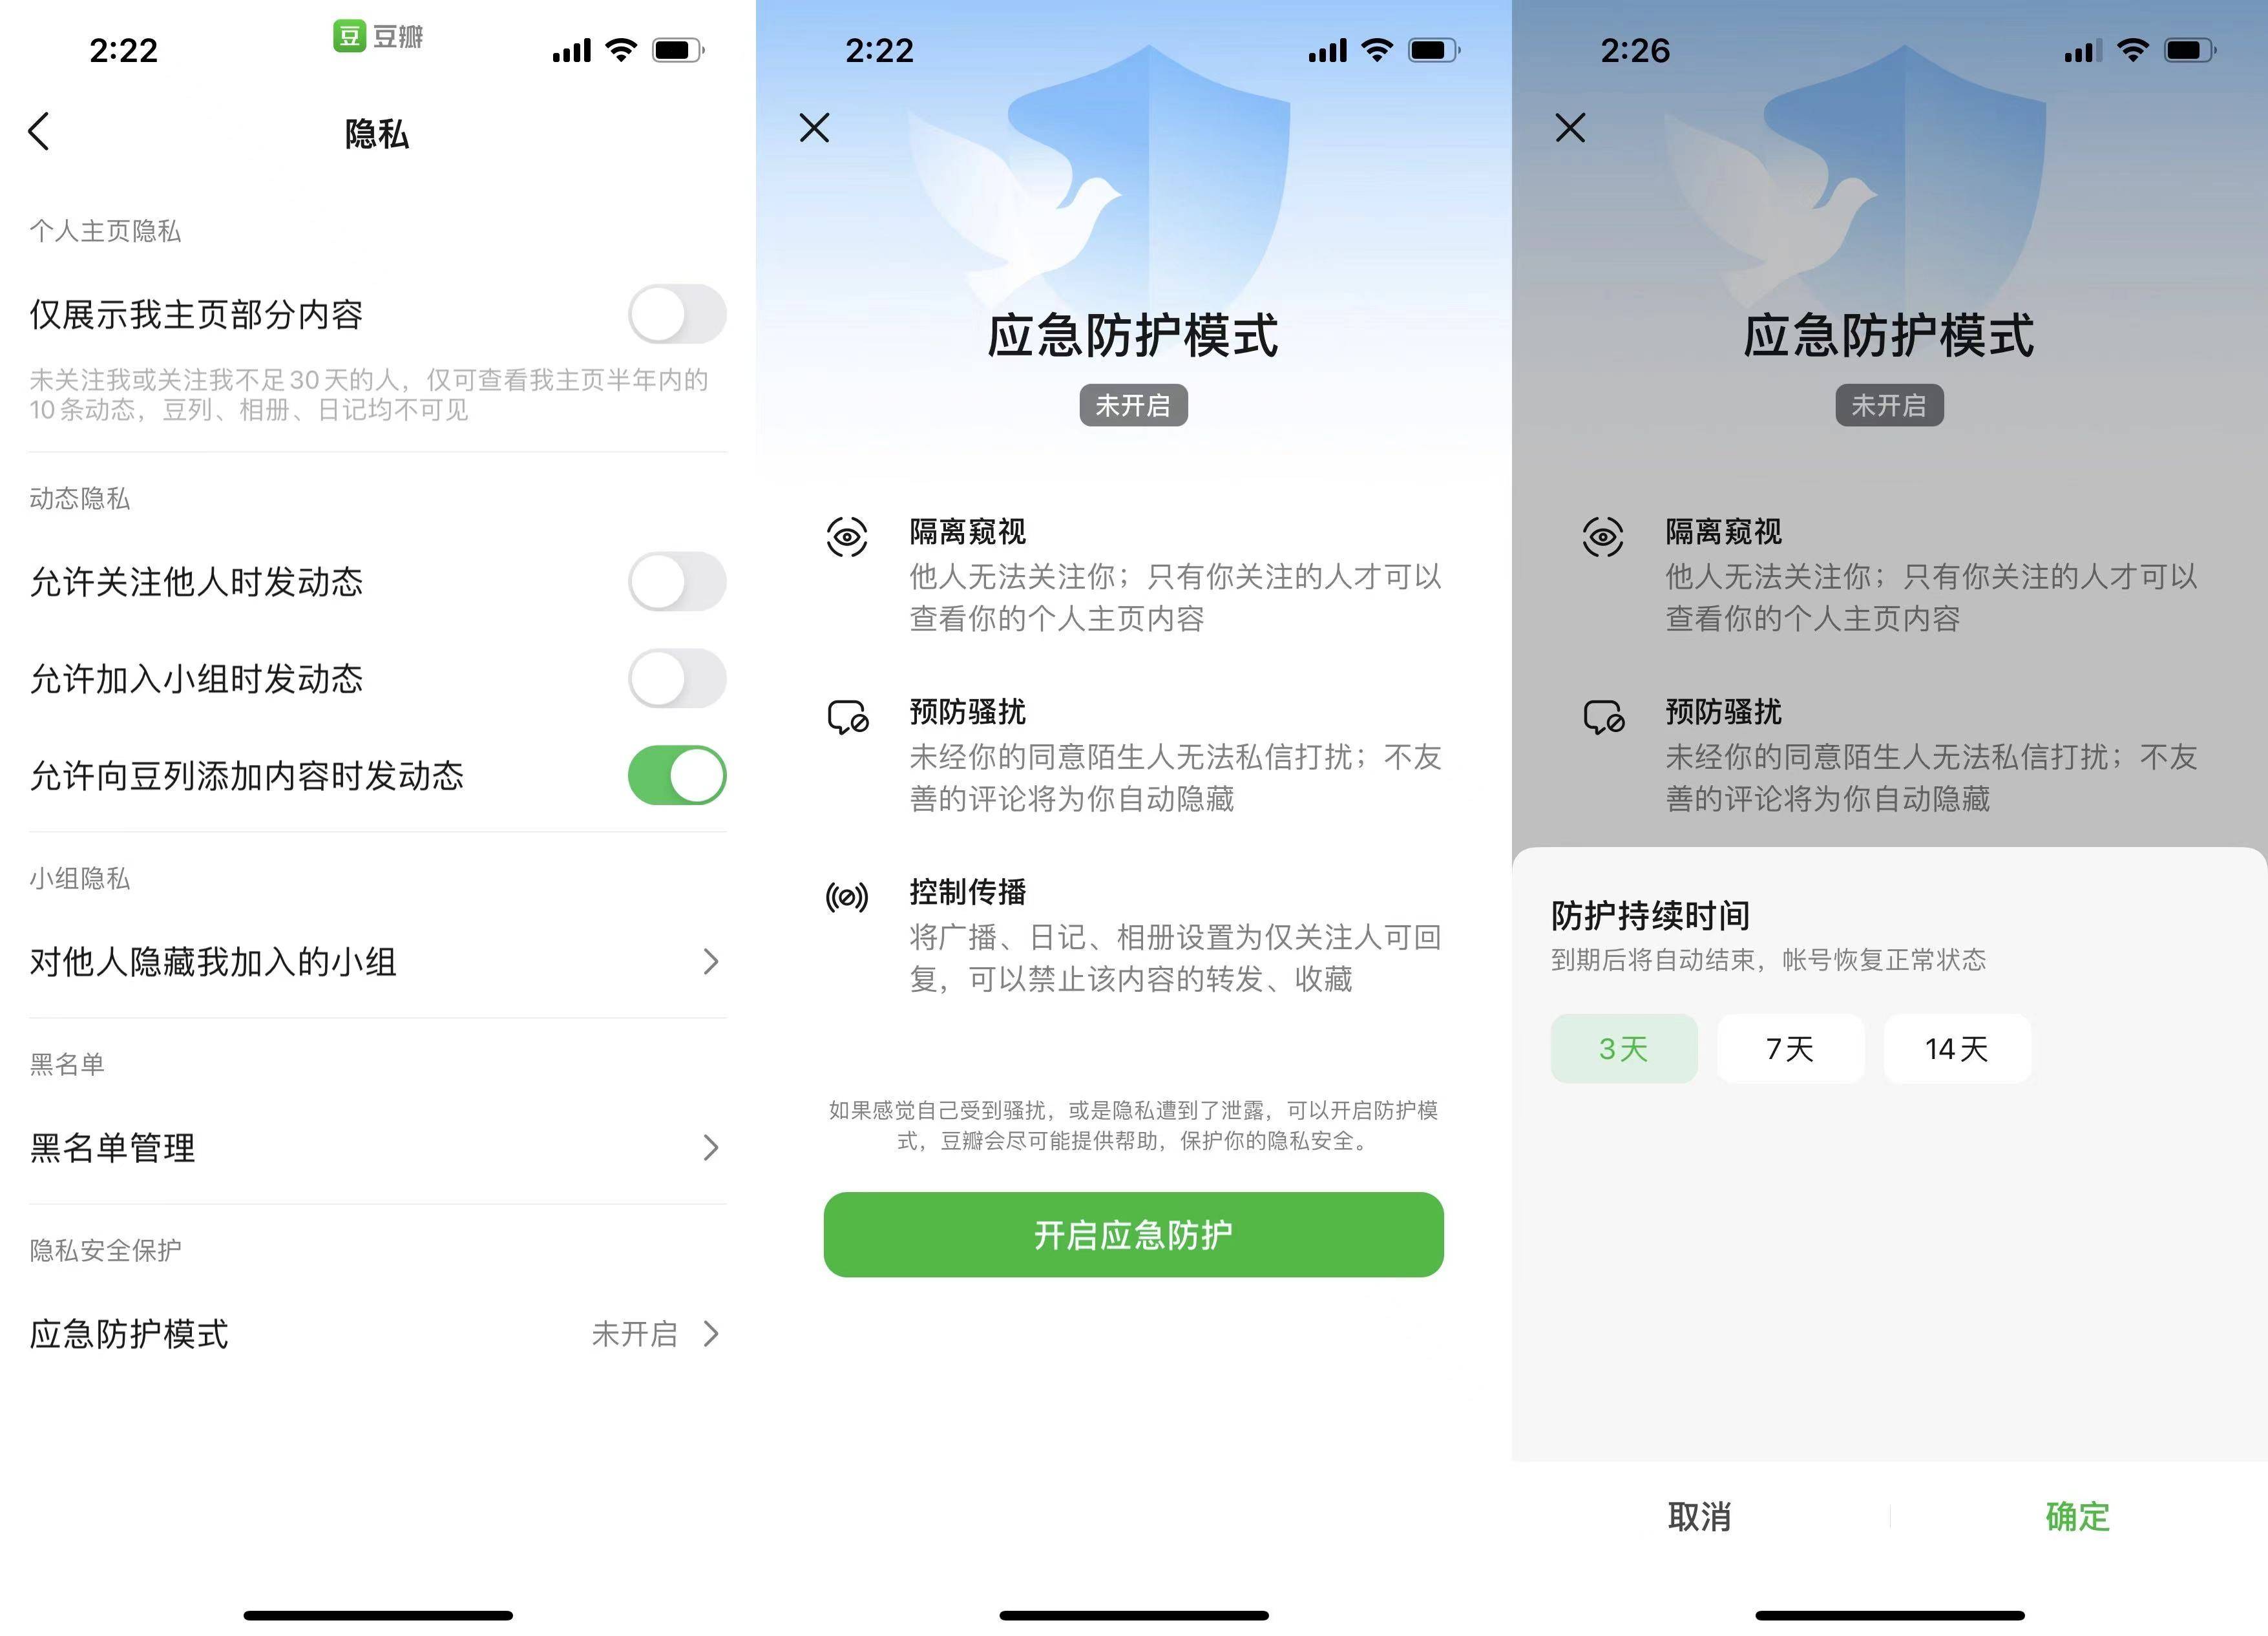 yingjifanghu - Le nuove funzioni che Weibo, Douban e Douyin stanno svolgendo hanno finalmente reso la cyber-violenza non più irrisolta